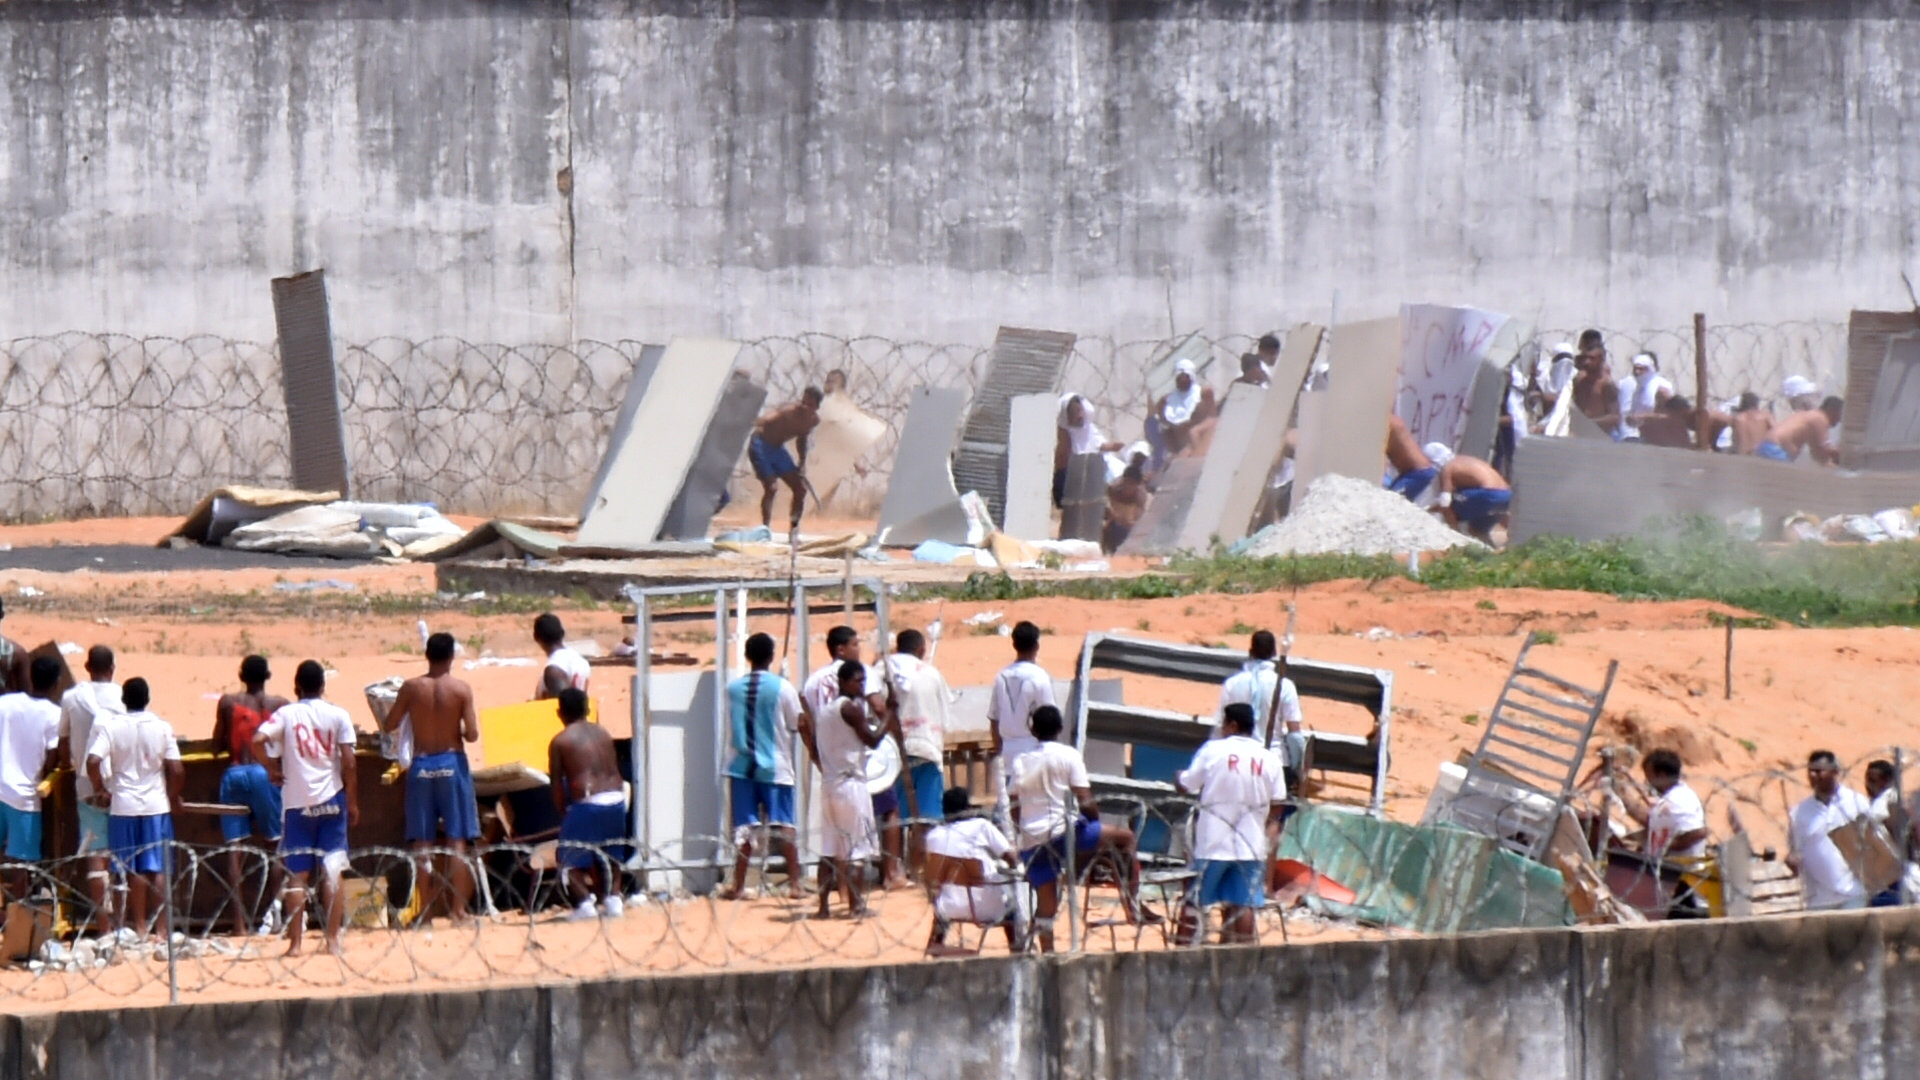 تمرد فى سجن ناتال بالبرازيل وقوات الأمن تحاول السيطرة